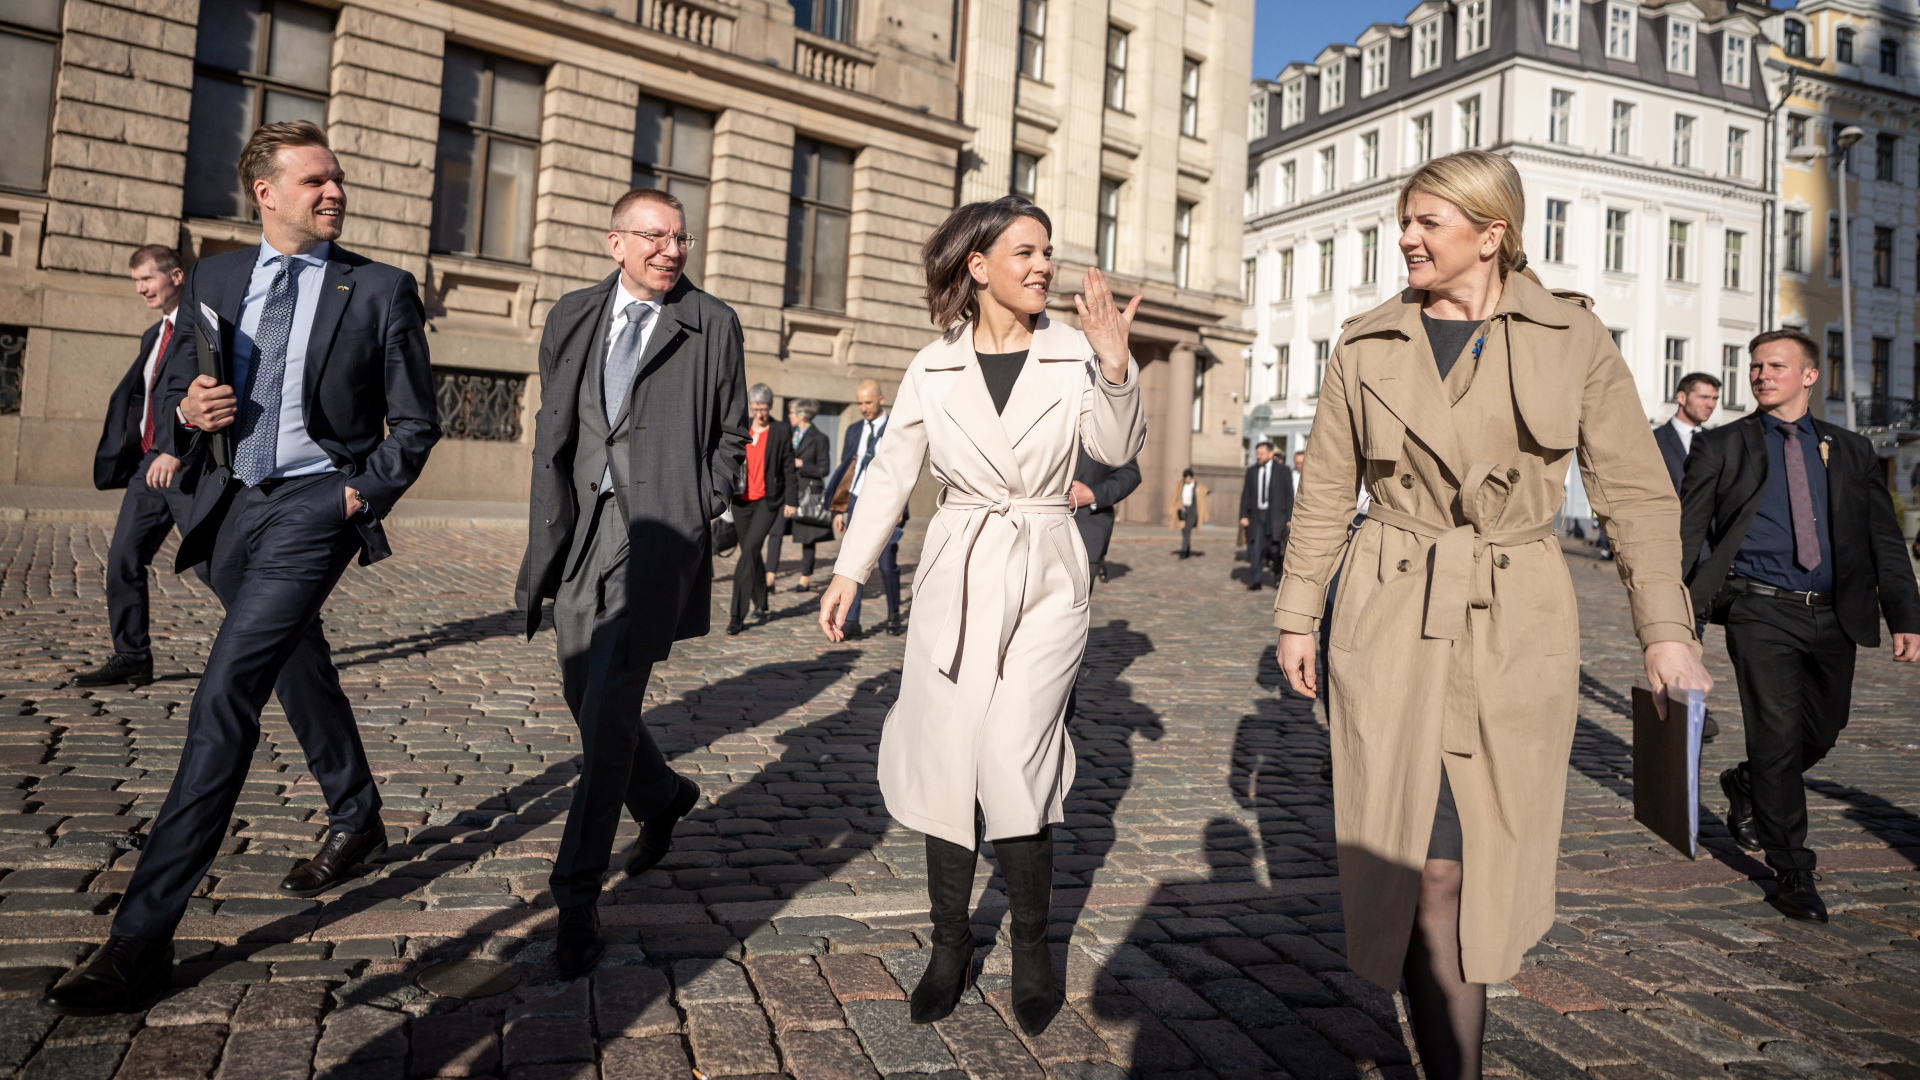 Annalena Baerbock geht neben Edgars Rinkevics, Eva-Maria Liimets und Gabrielius Landsbergis durch die Altstadt von Riga. | dpa